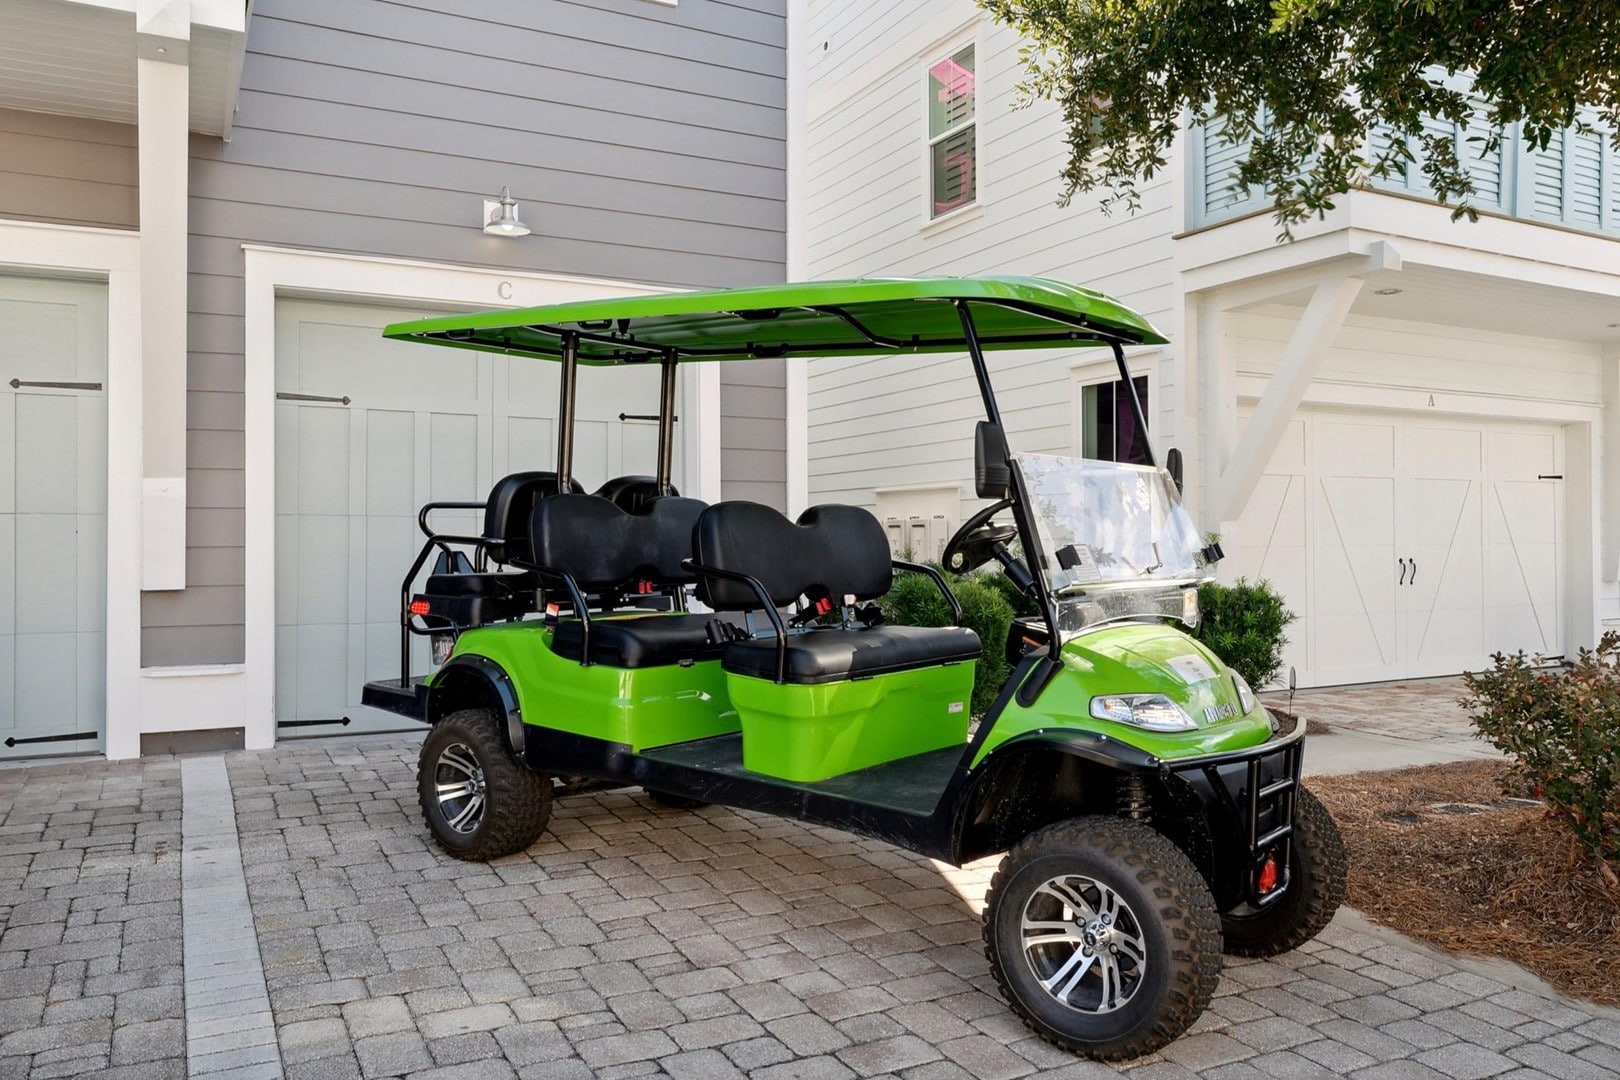 Meet - "KERMIT" the Golf Cart